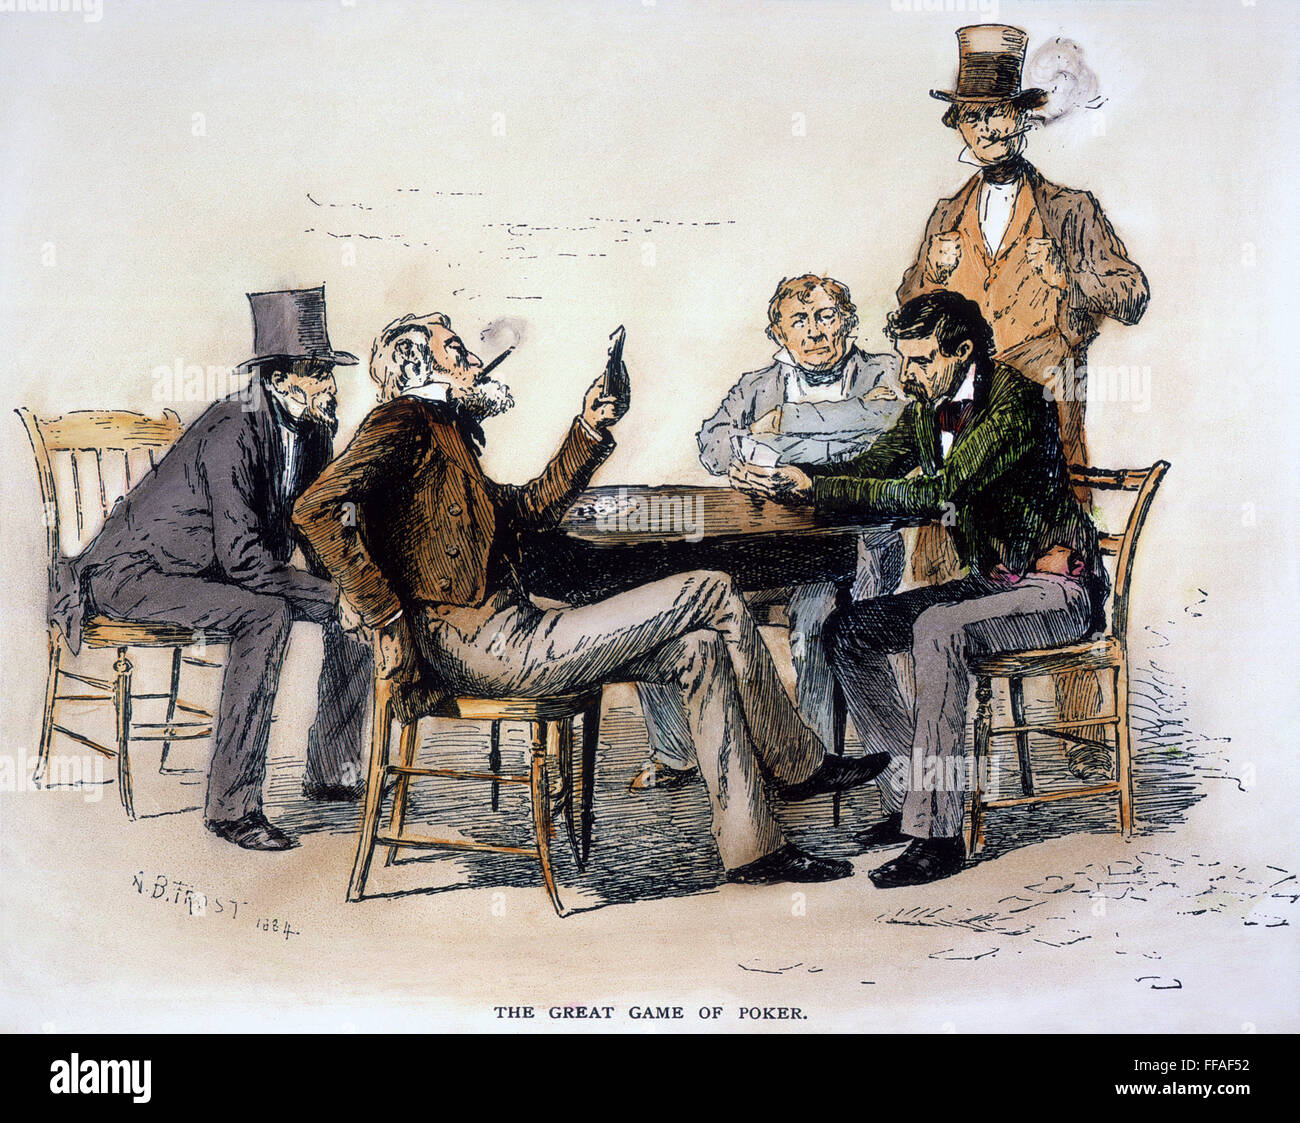 POKER-SPIEL, DER 1840ER JAHRE. NUM-Poker-Spiel in einer Taverne in Georgien, der 1840er Jahre. Zeichnung von Arthur Burdett Frost, 1884. Stockfoto